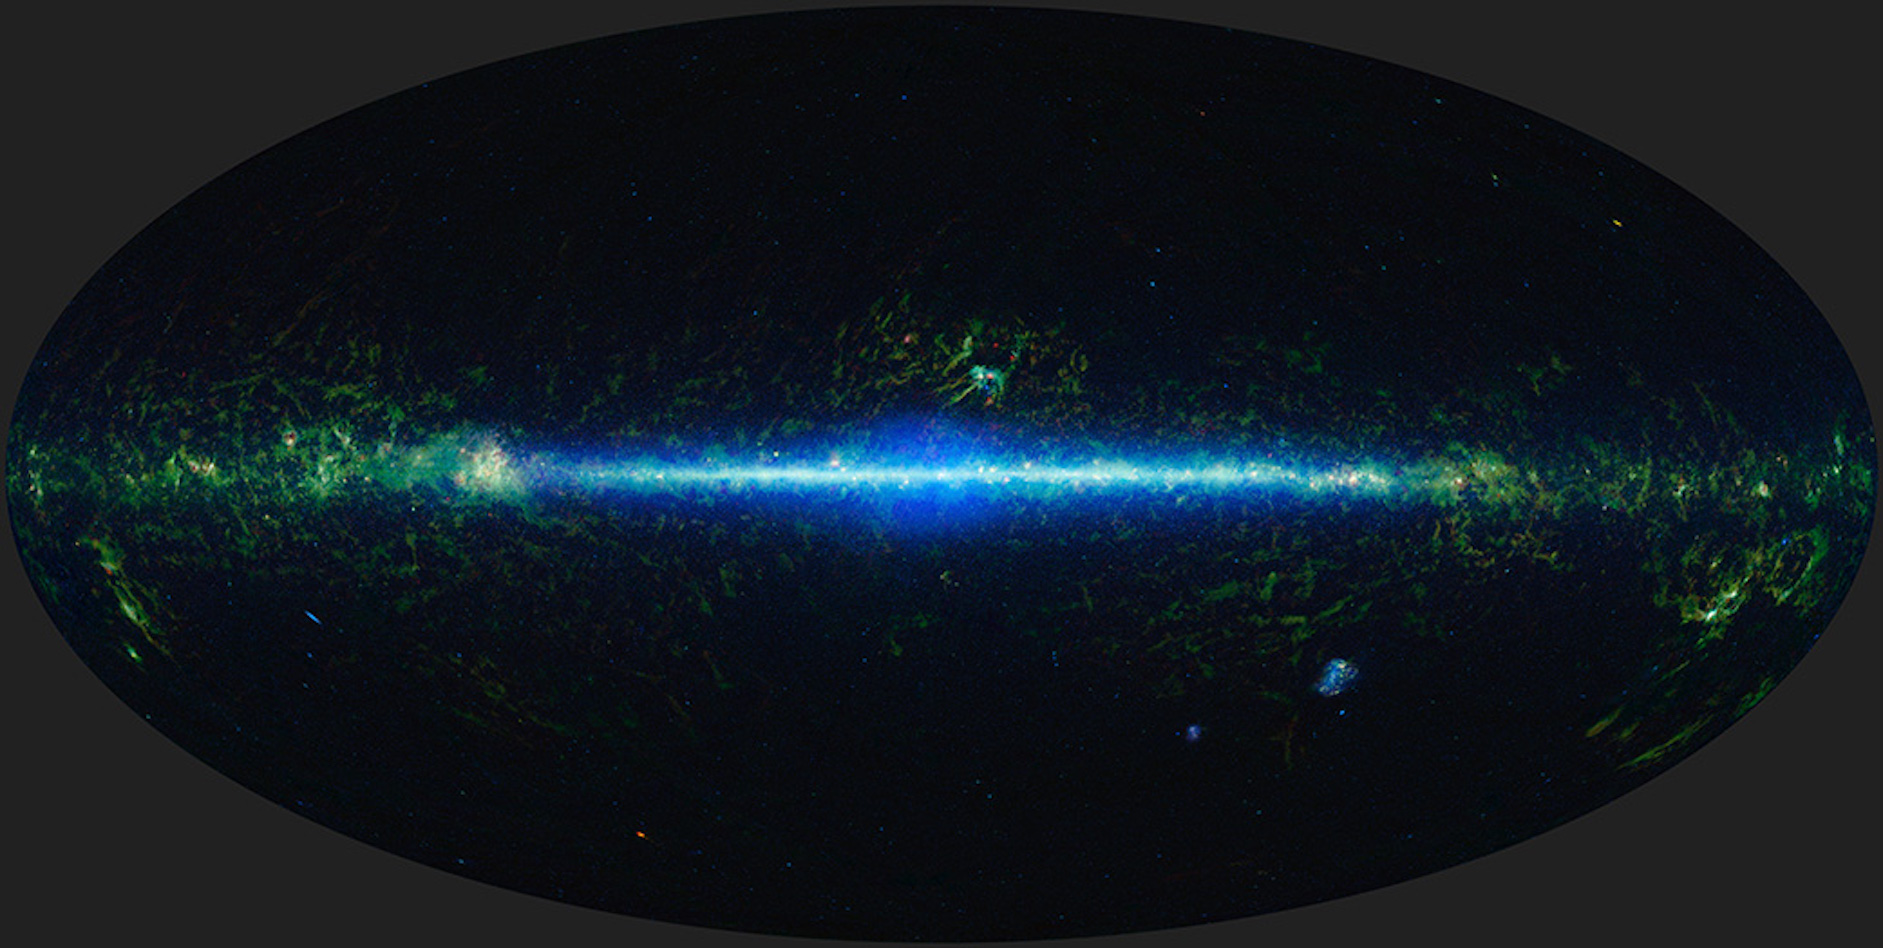 Cette image est composée de photos couvrant tout le ciel prises par le télescope spatial de la Nasa baptisé Wise — pour Wide-field infrared survey explorer. En combinant toutes les images construites depuis 12 ans, des astronomes nous proposent un timelapse étonnant. © Nasa, JPL-Caltech, Ucla